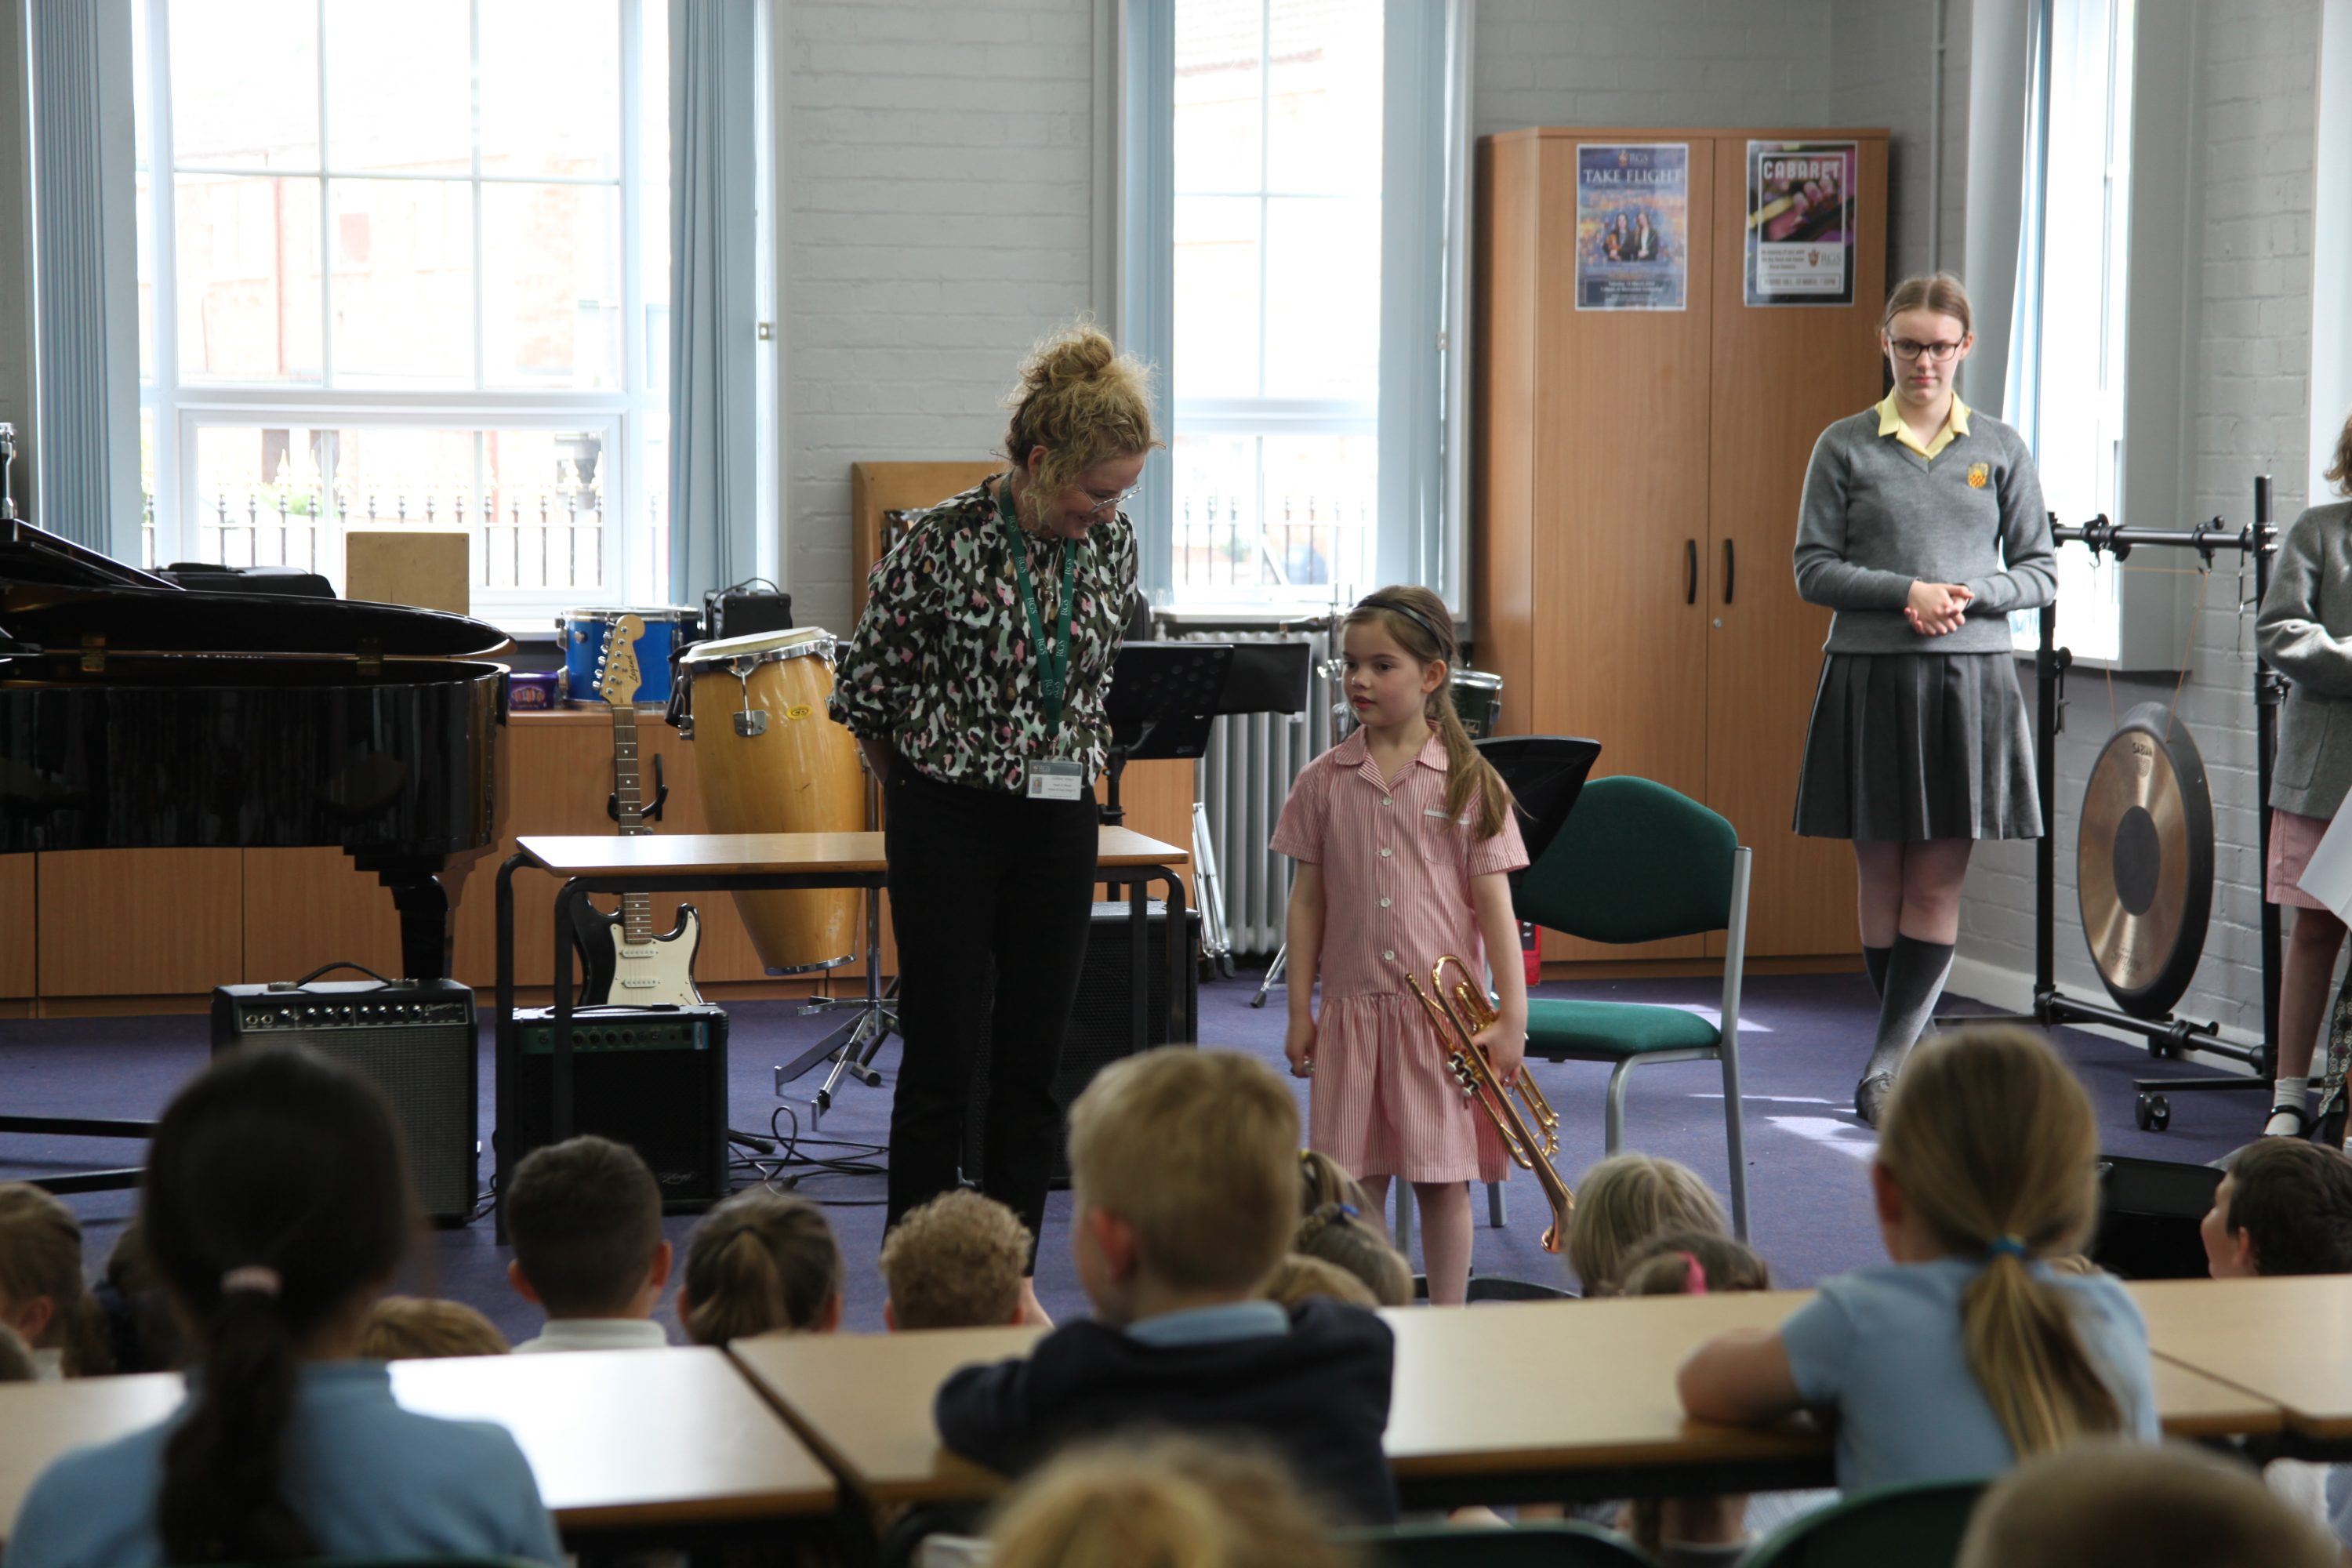 Pupils explore instruments with Mrs Vincent